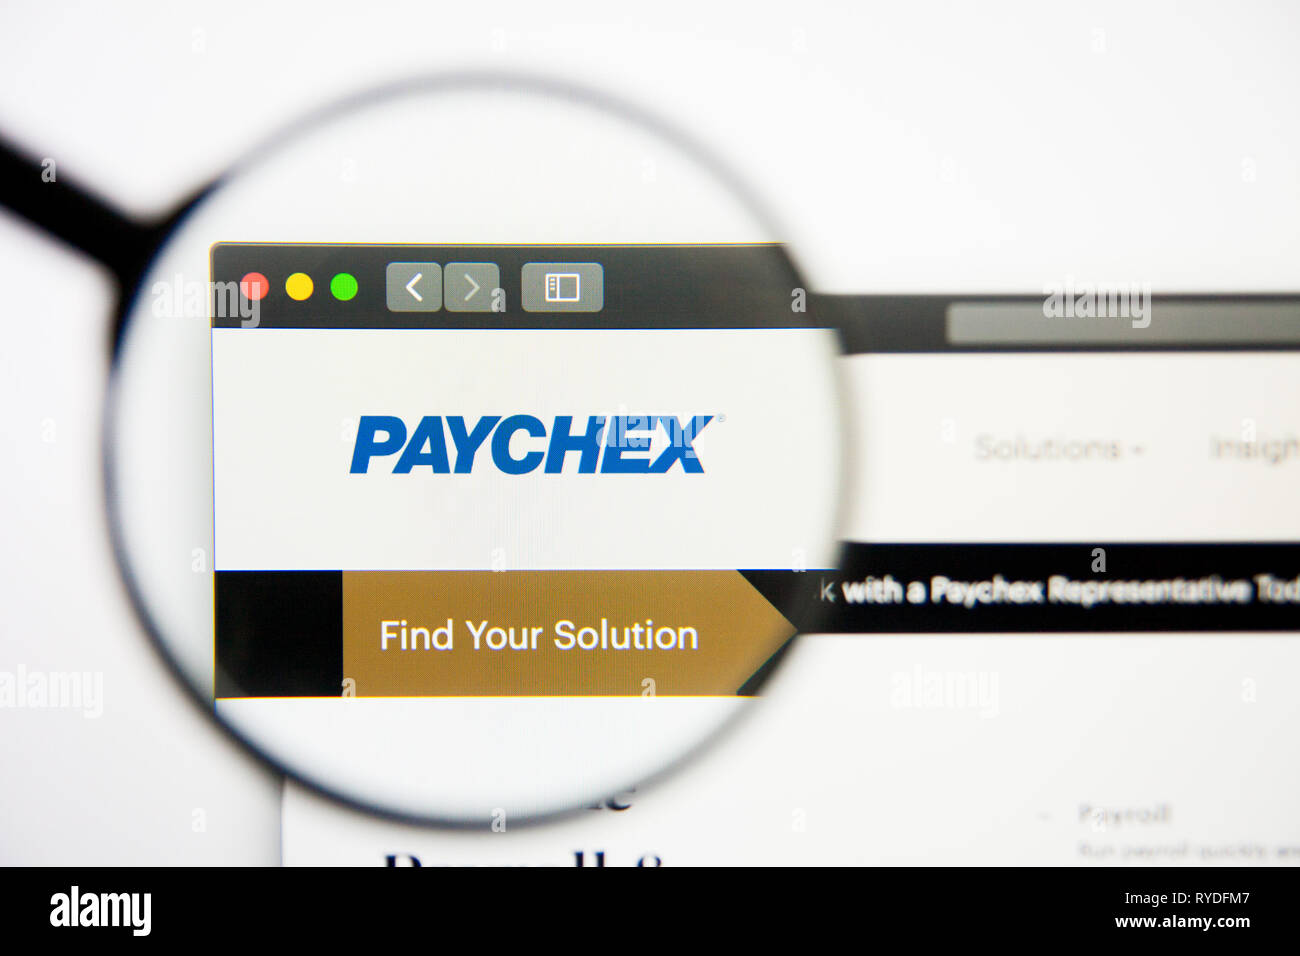 Los Angeles, Californie, USA - 28 Février 2019 : Paychex accueil du site. Logo Paychex visible sur l'écran d'affichage, de rédaction d'illustration Banque D'Images